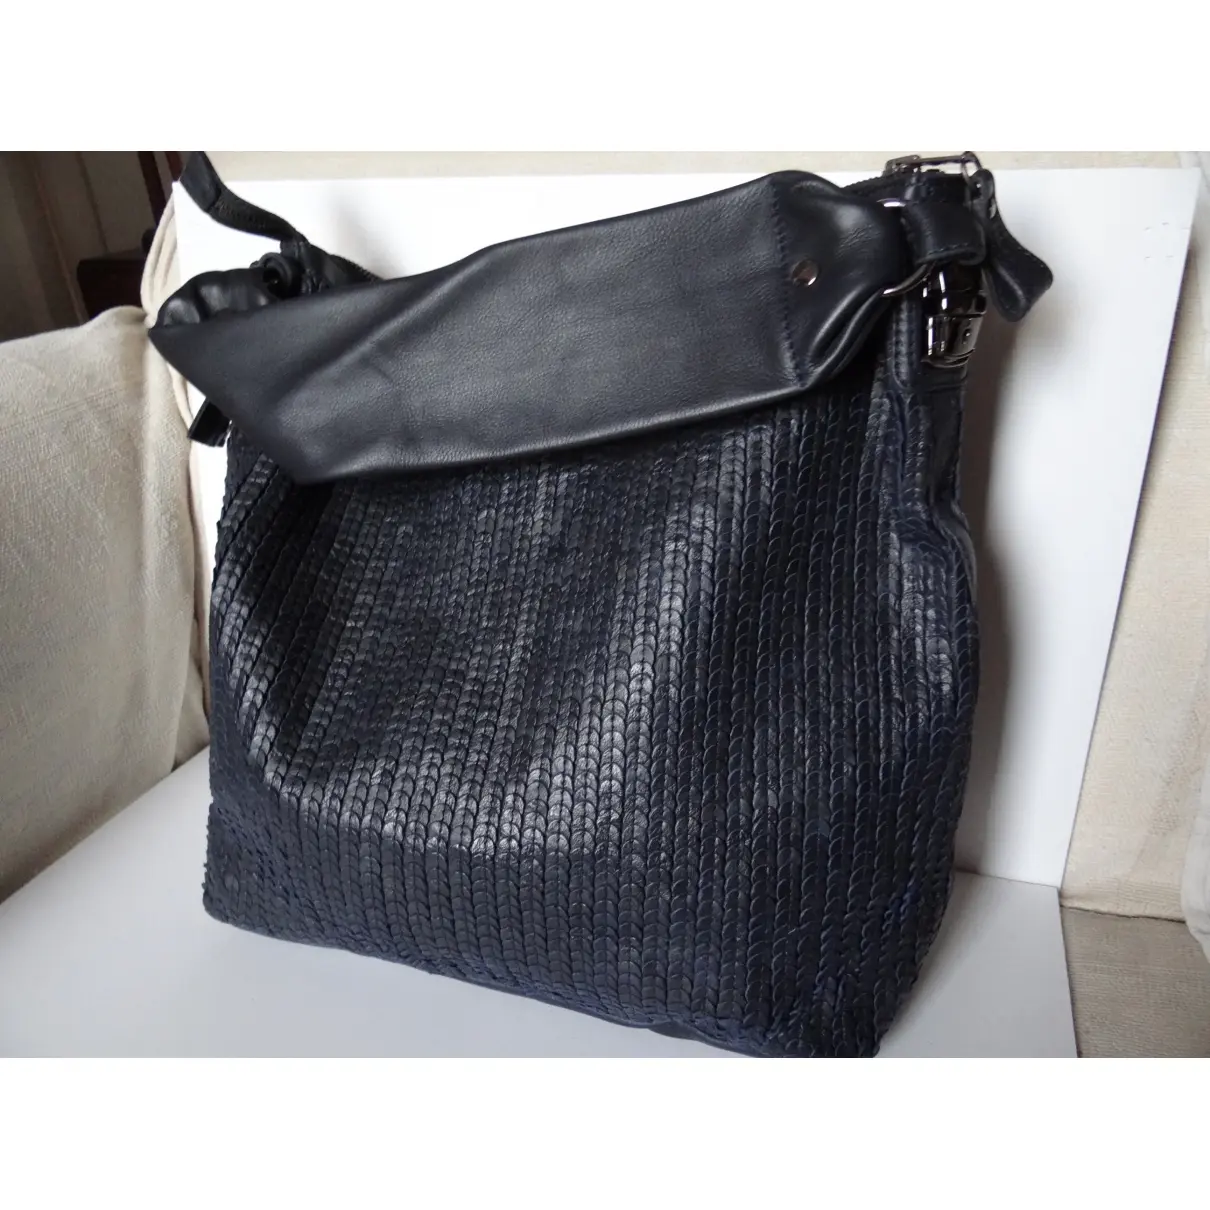 Leather handbag Farhi by Nicole Farhi